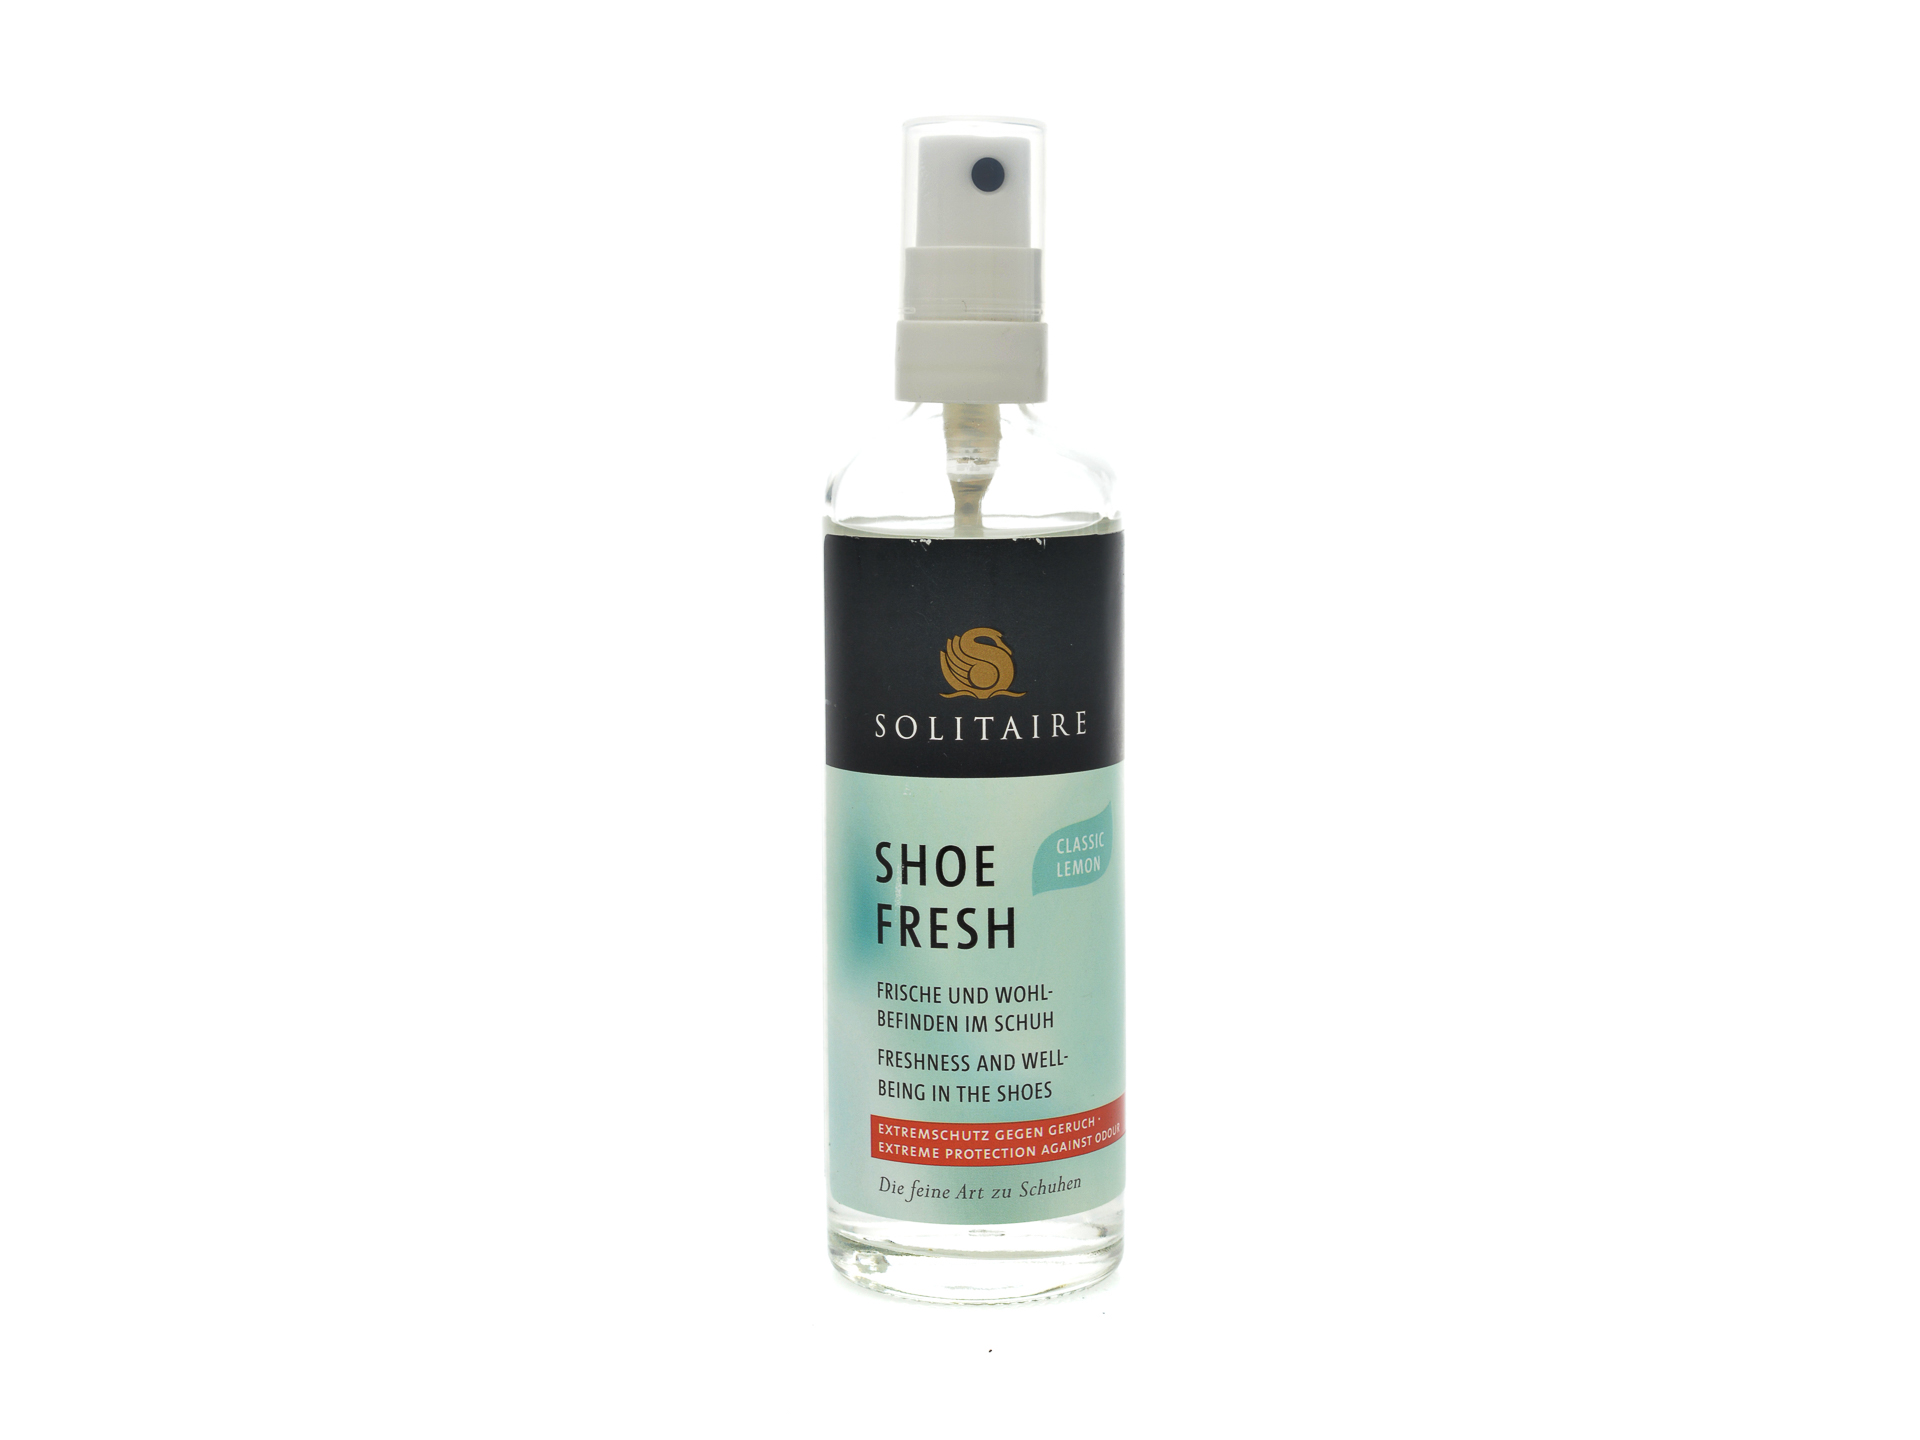 PR Spray pentru mentinerea mirosului placut in incaltaminte, Solitaire /accesorii/produse